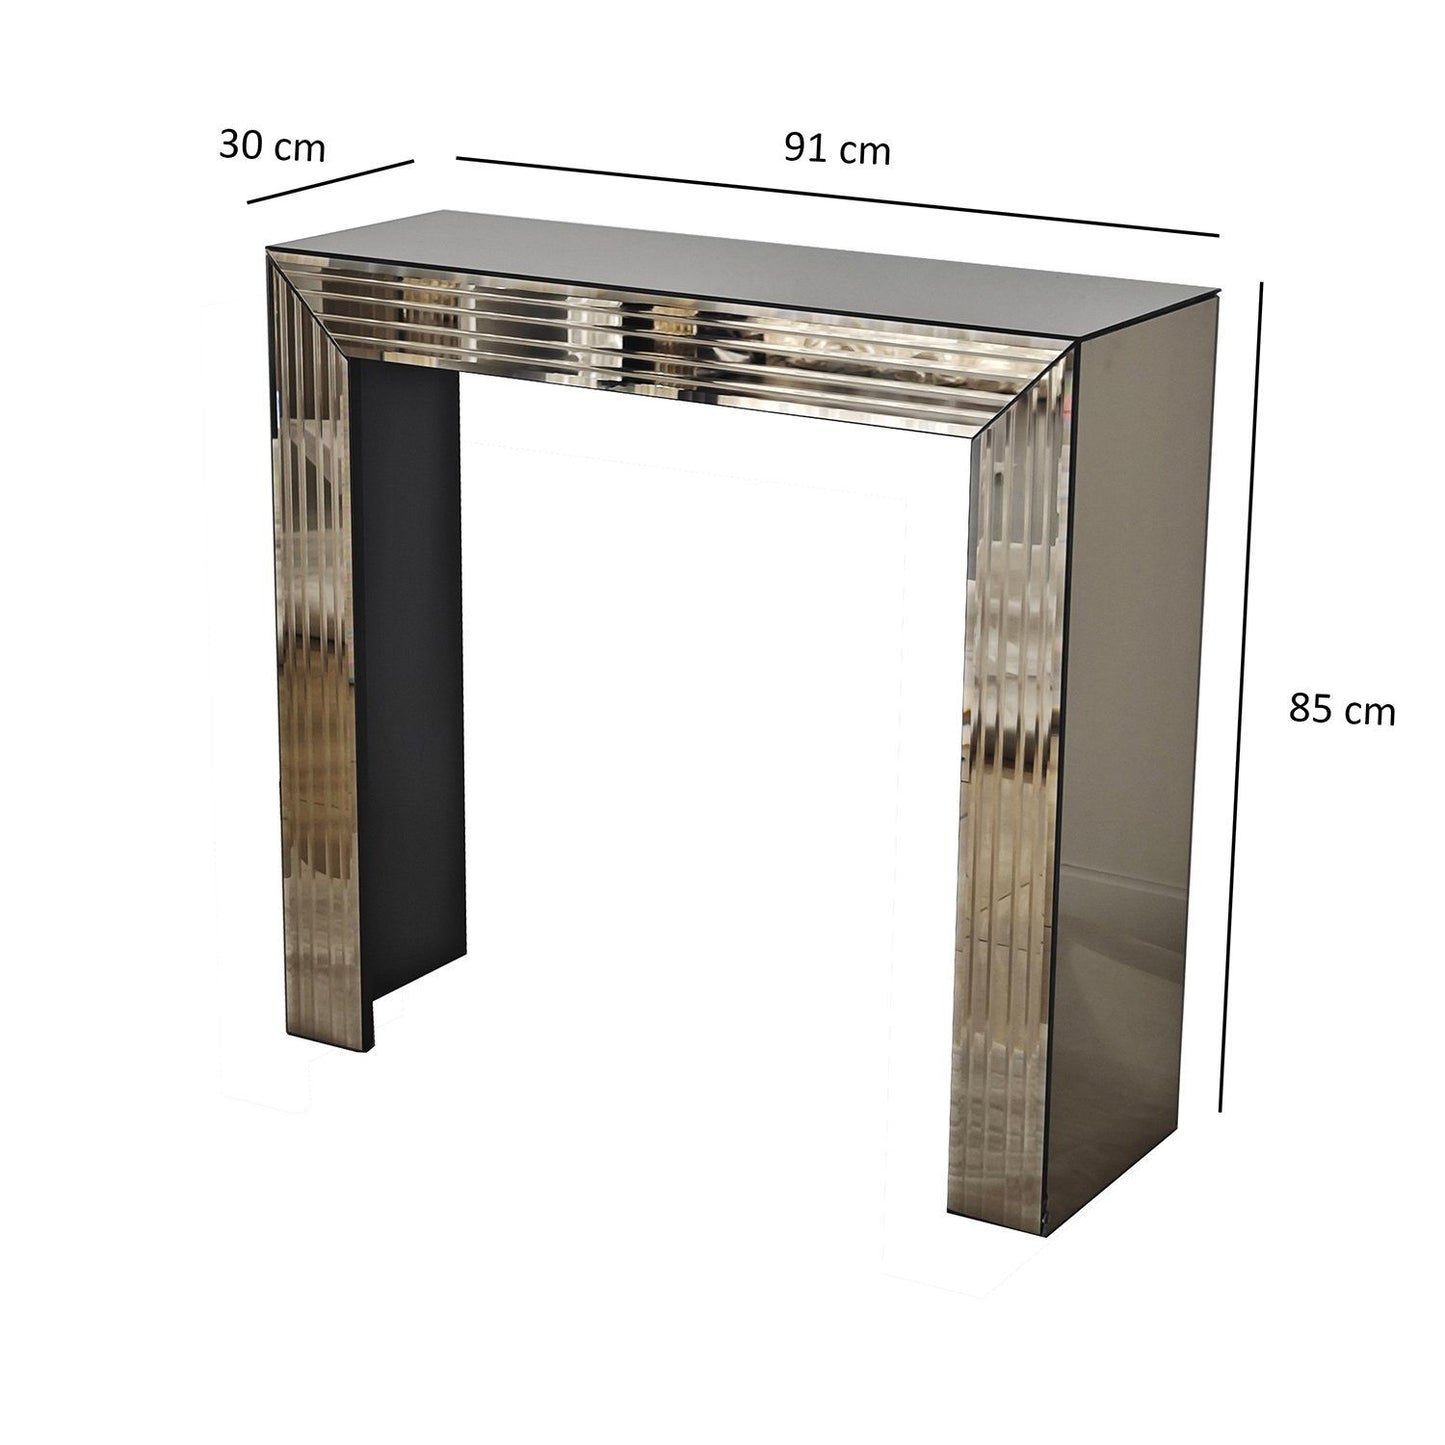 Dresser 1B - Bronze - Dresser